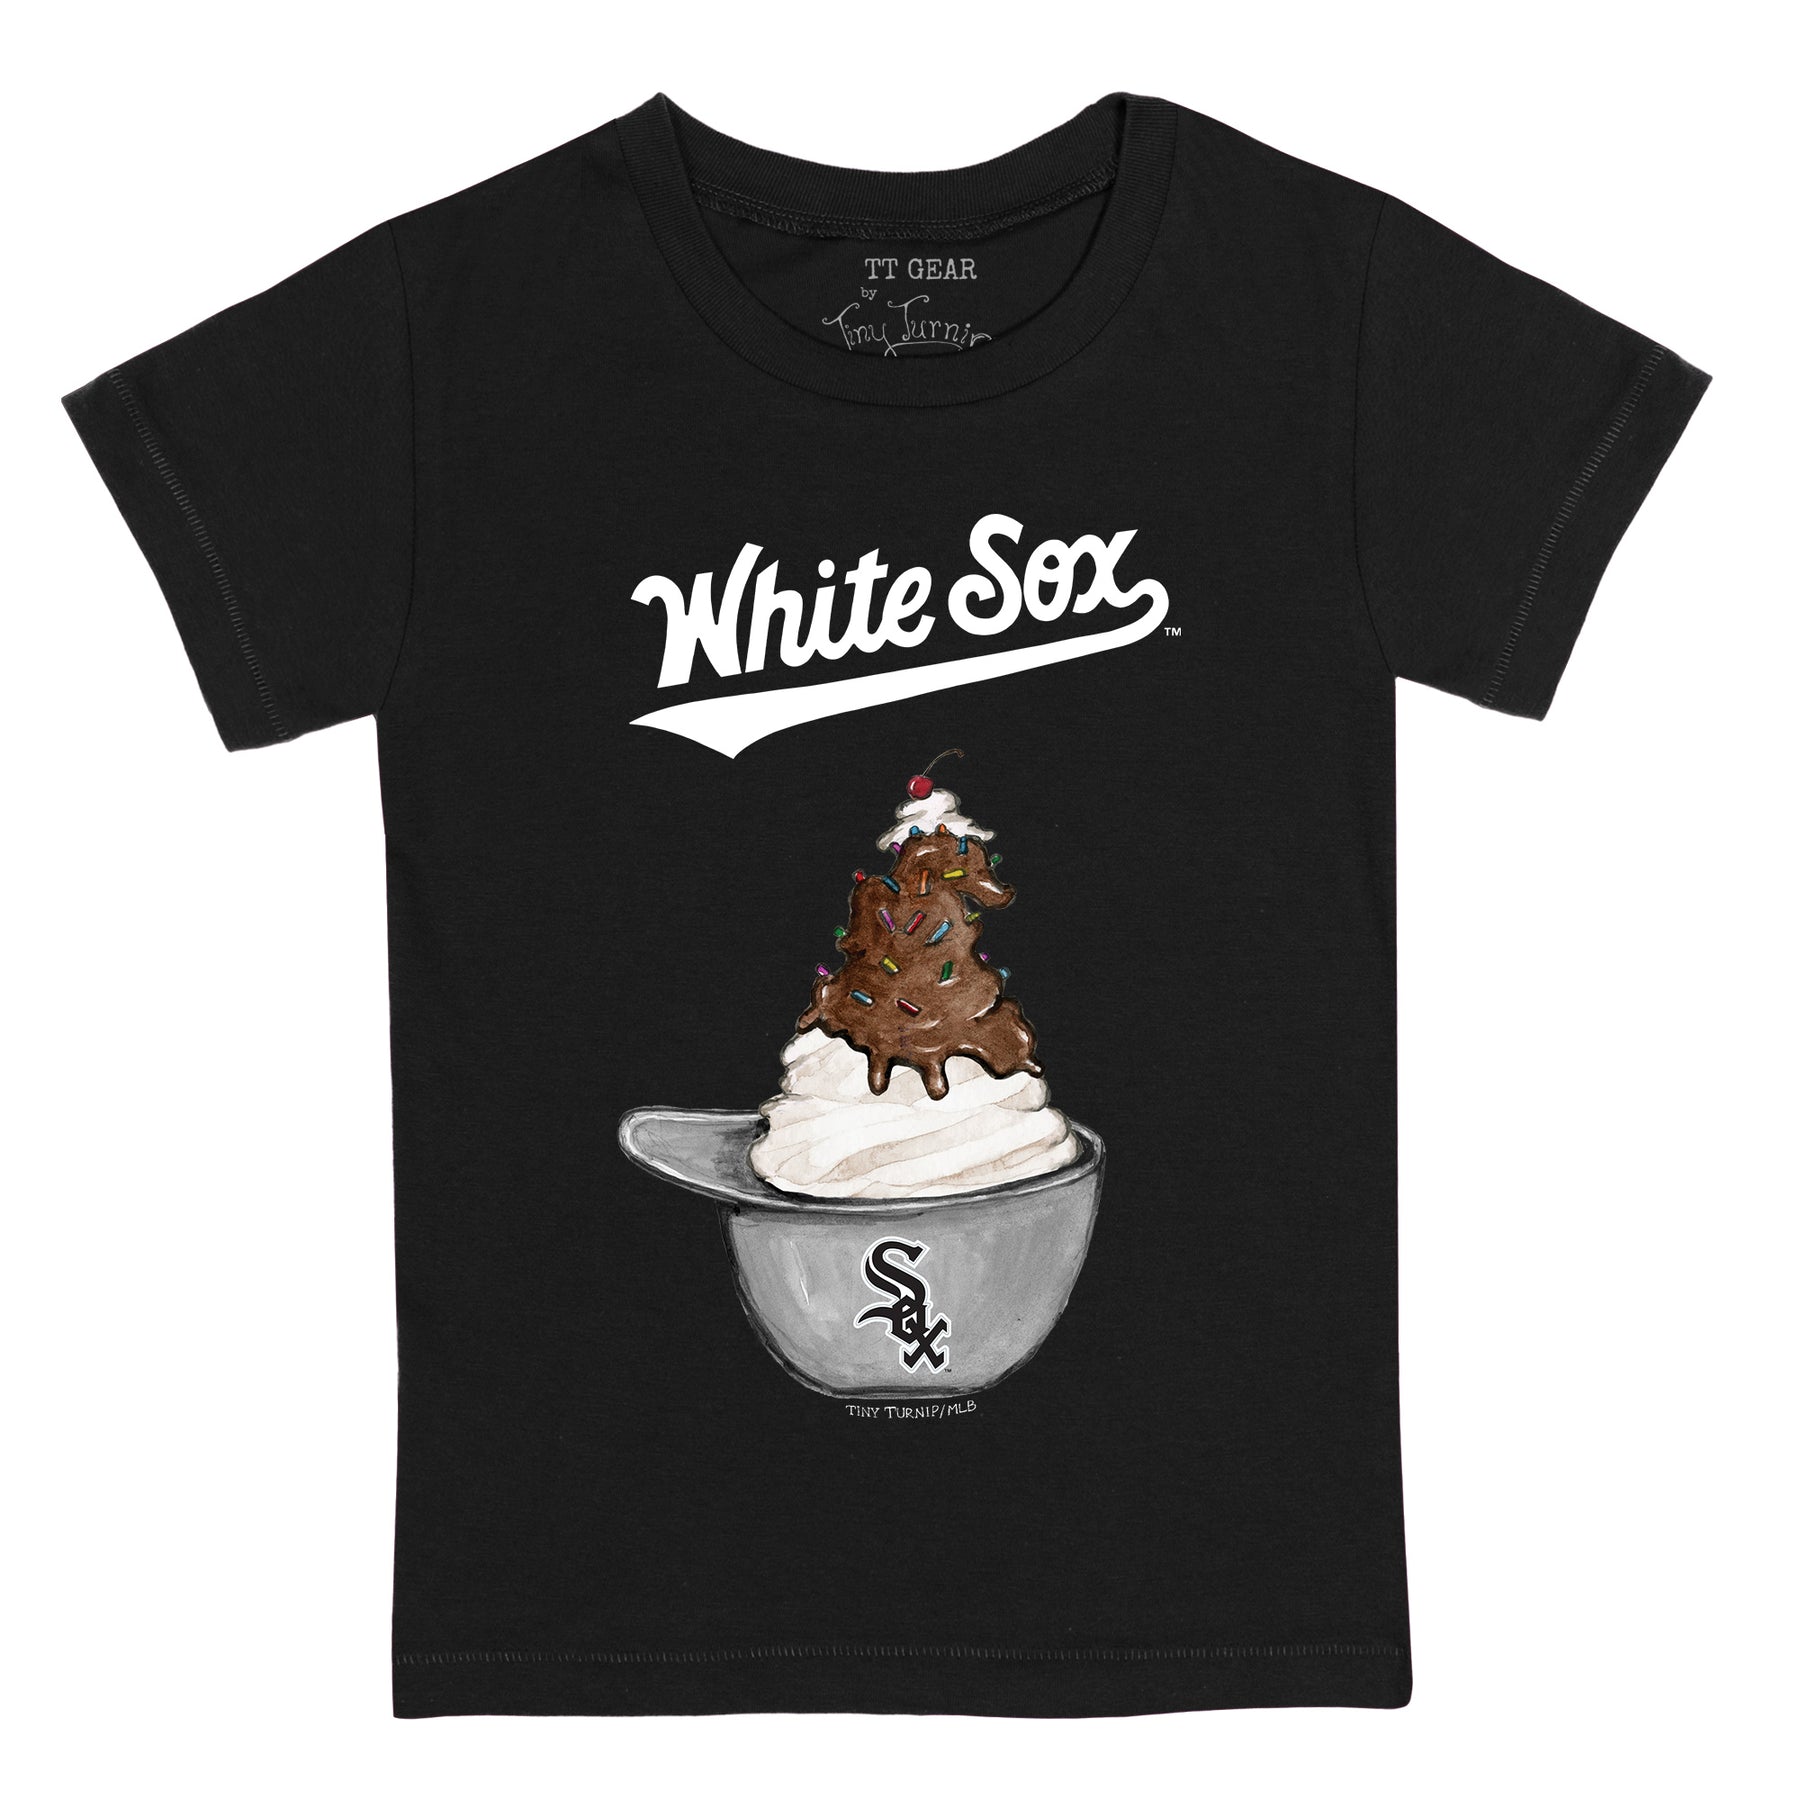 Boston Red Sox Sundae Helmet Tee Shirt 5T / White